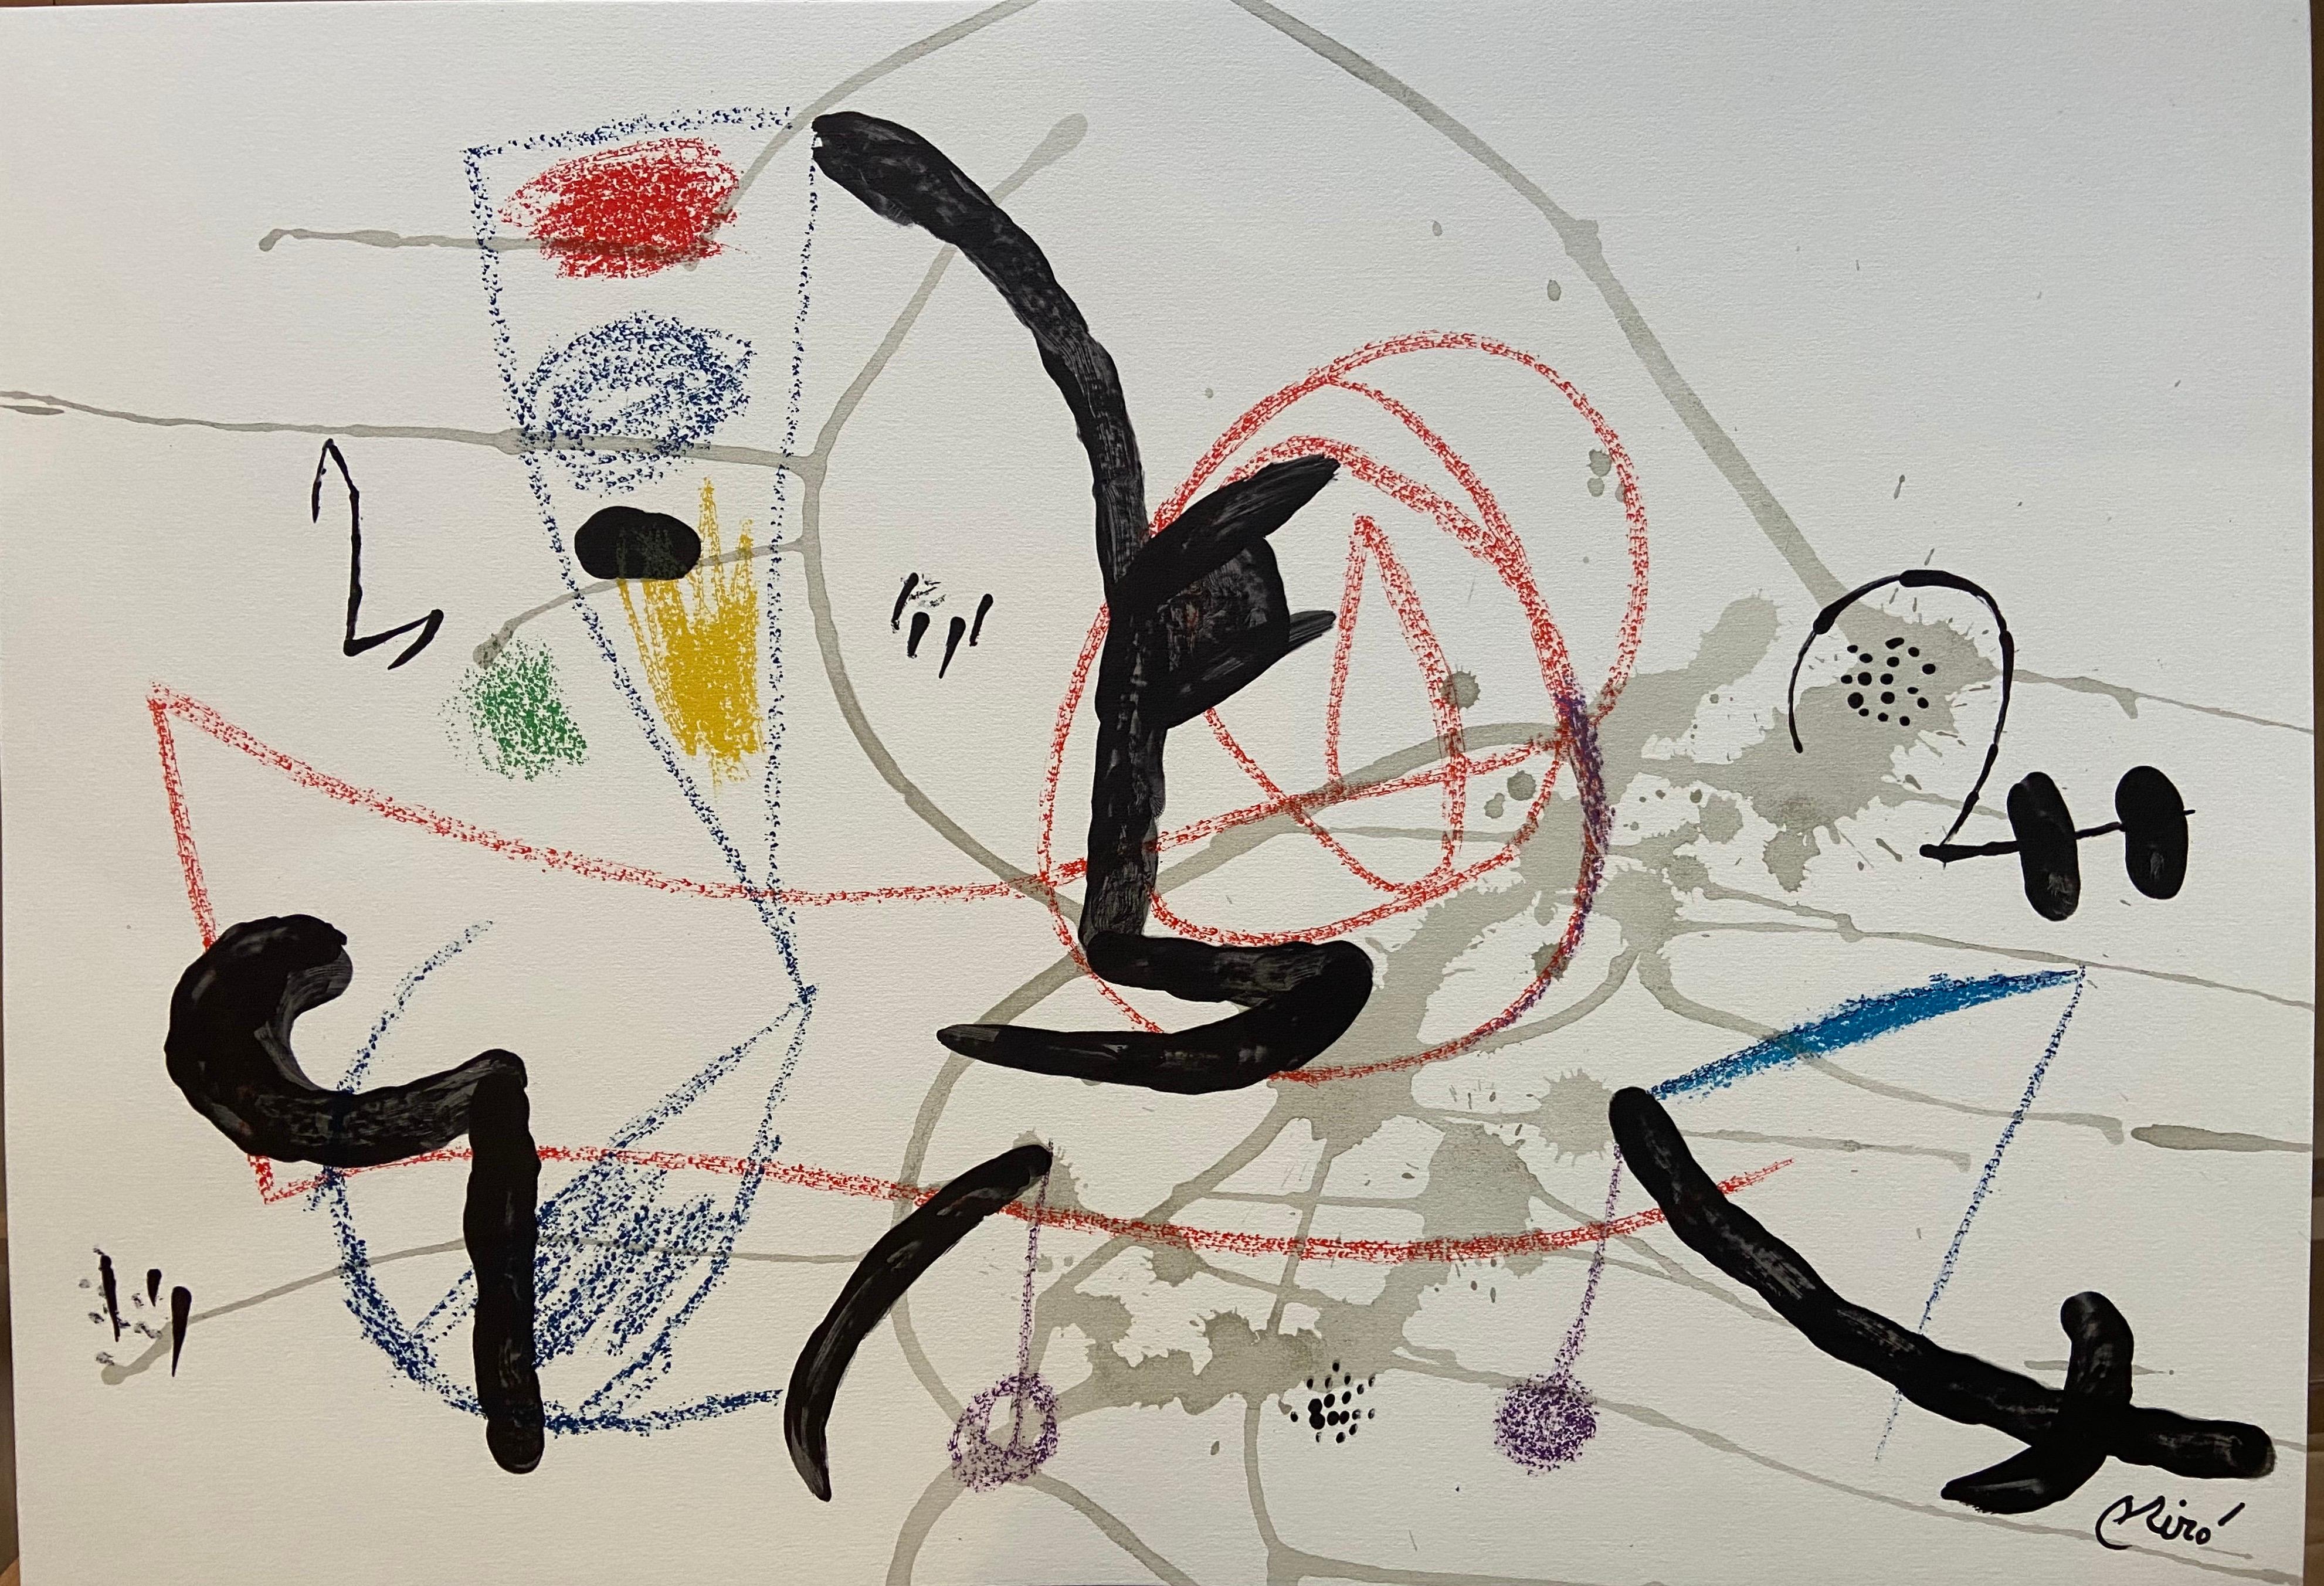 Joan Miró Abstract Print - "Maravillas con variaciones Acrósticas en el jardin" by Miro